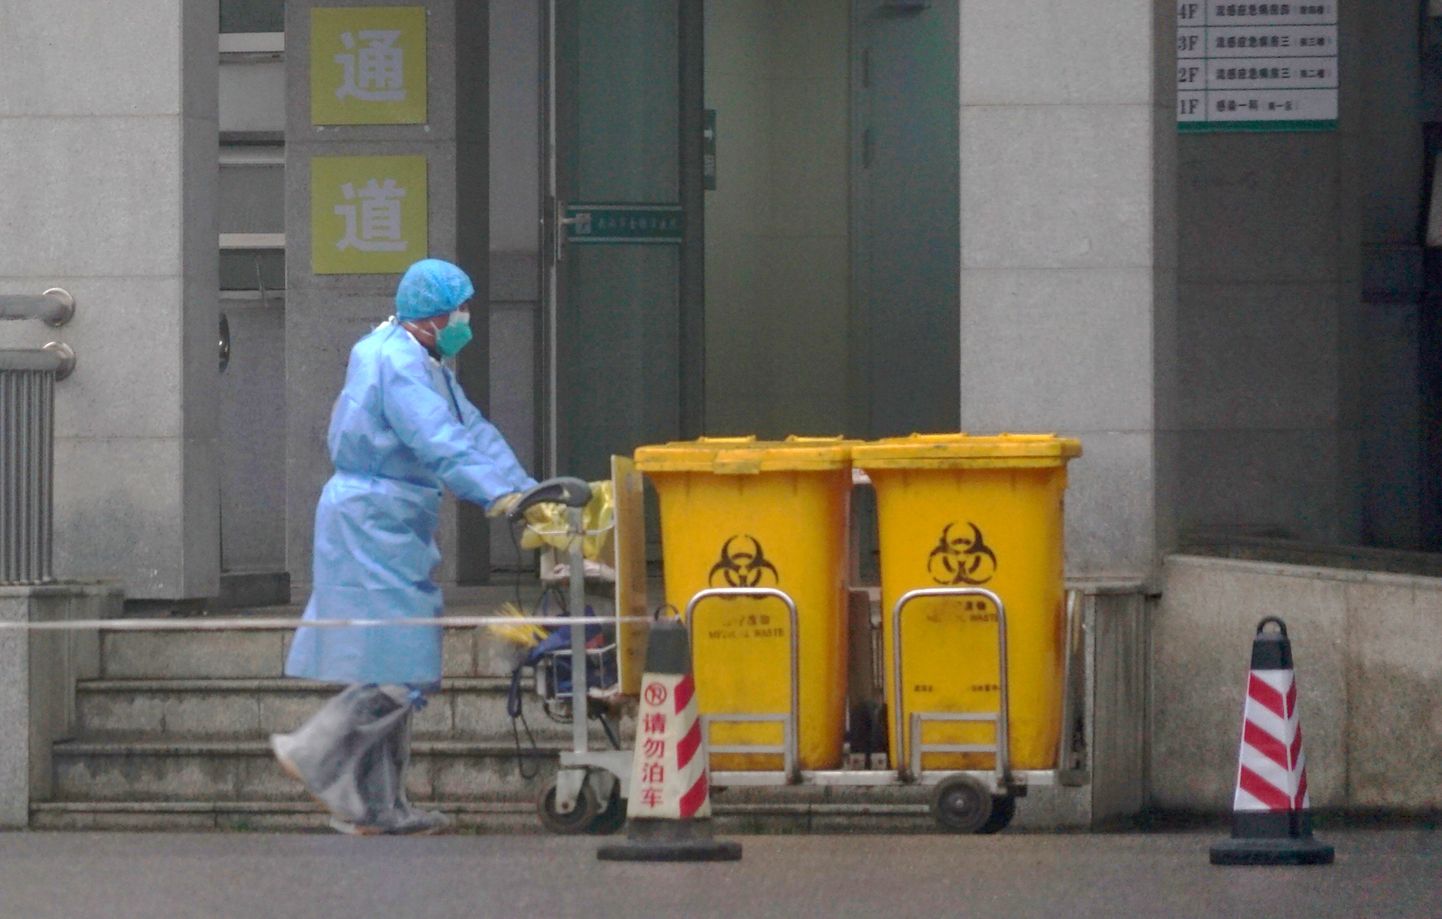 Сотрудники перевозят контейнеры с биологическими отходами в медицинском центре Ухани, где проходят лечение некоторые инфицированные новым вирусом.